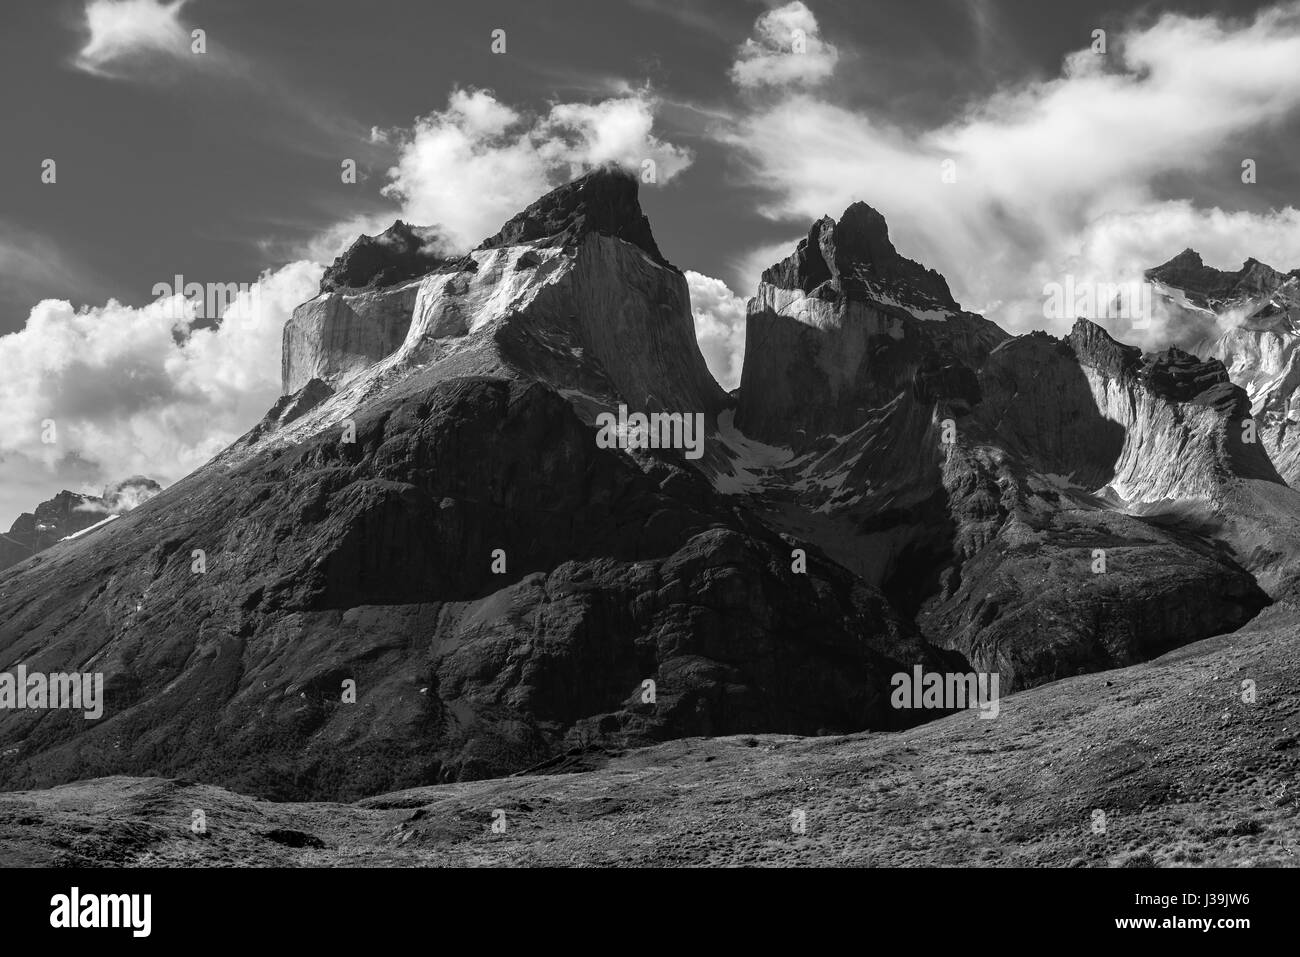 Fotografia in bianco e nero del maestoso Cuernos (corna) del Paine picchi andini all'interno del parco nazionale Torres del Paine in Patagonia cilena. Foto Stock